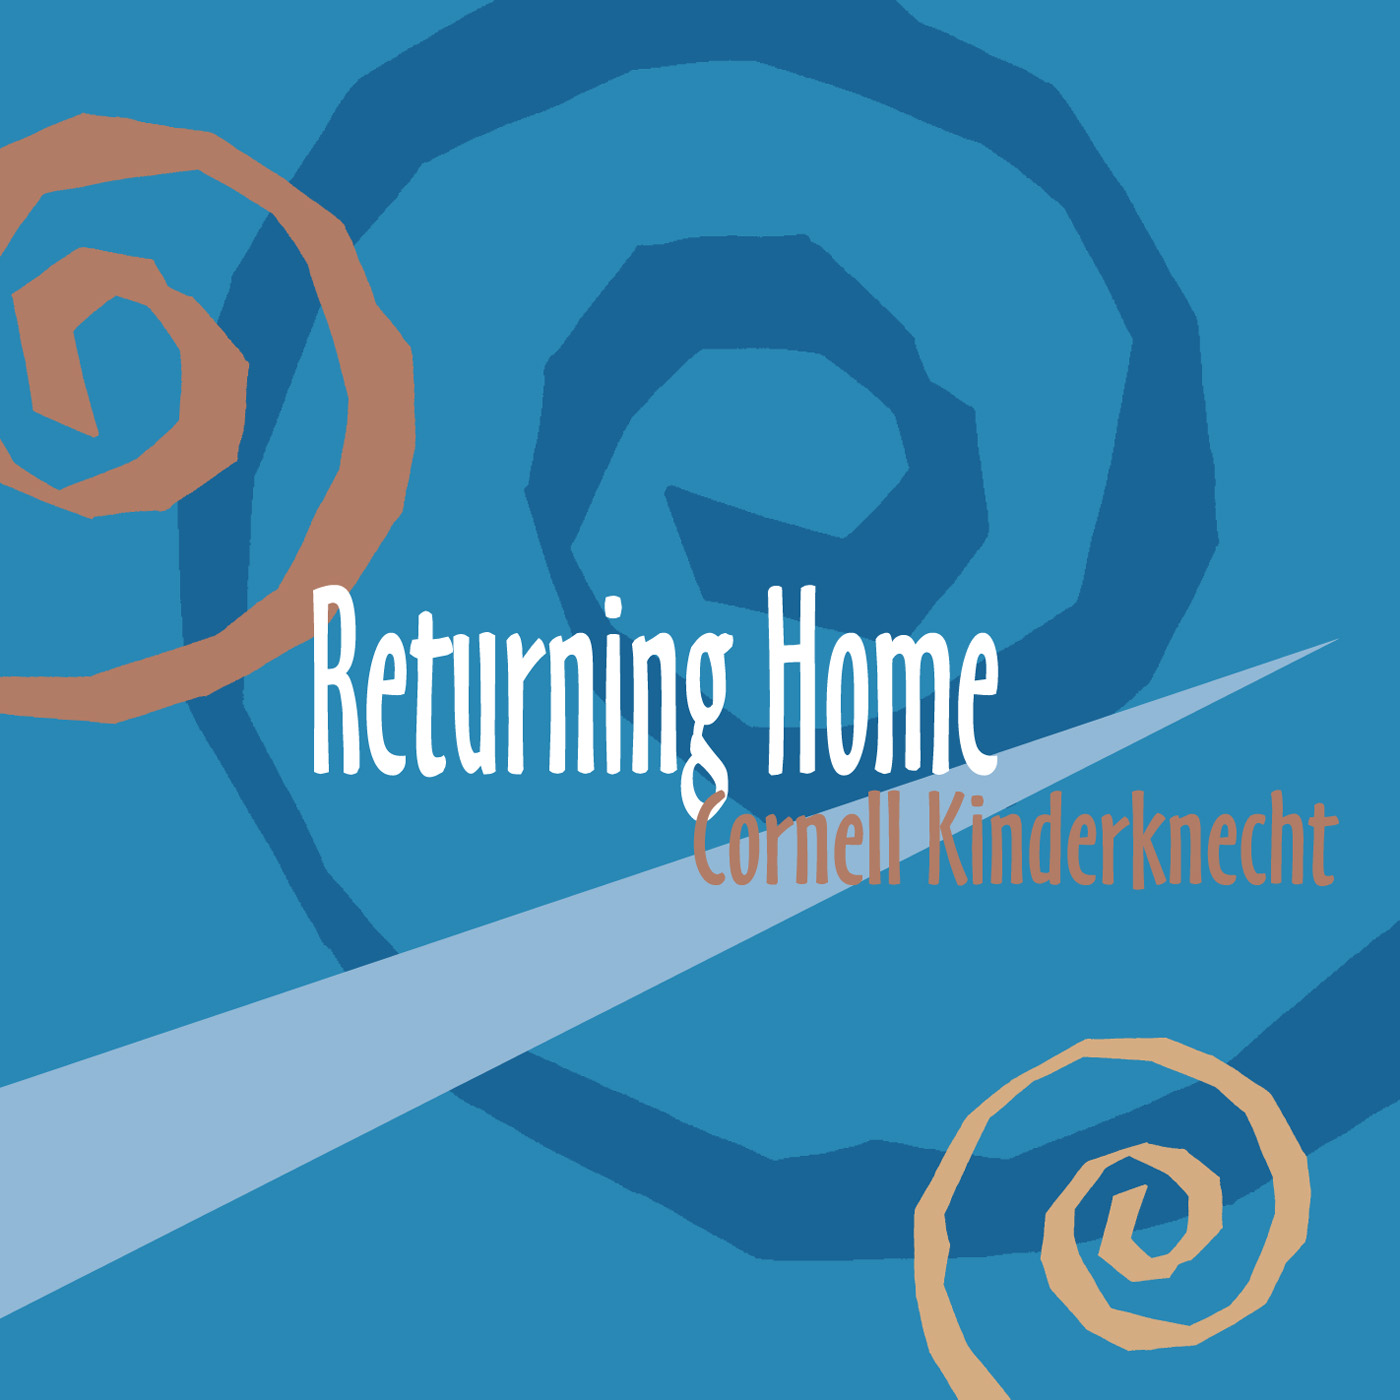 Returning Home album by Cornell Kinderknecht